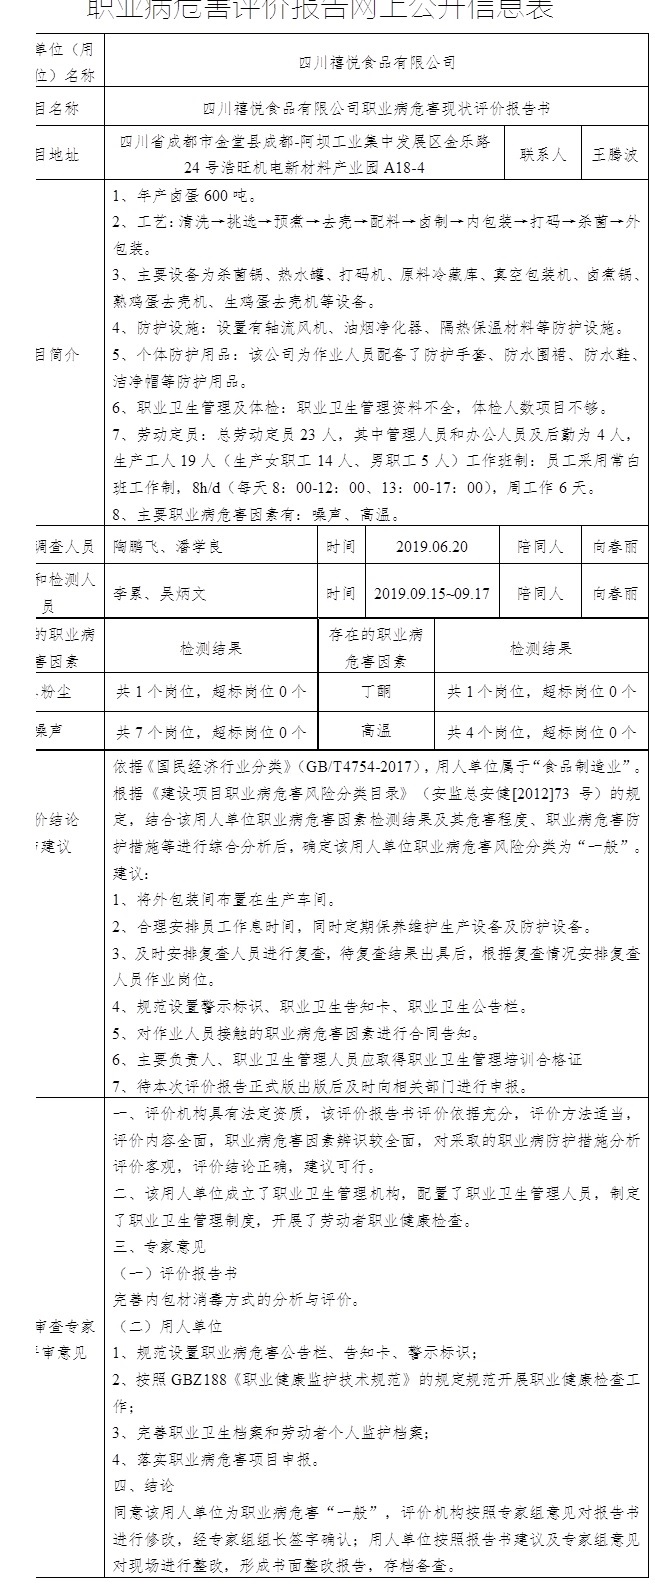 四川禧悦食品有限公司职业病危害现状评价报告书.jpg